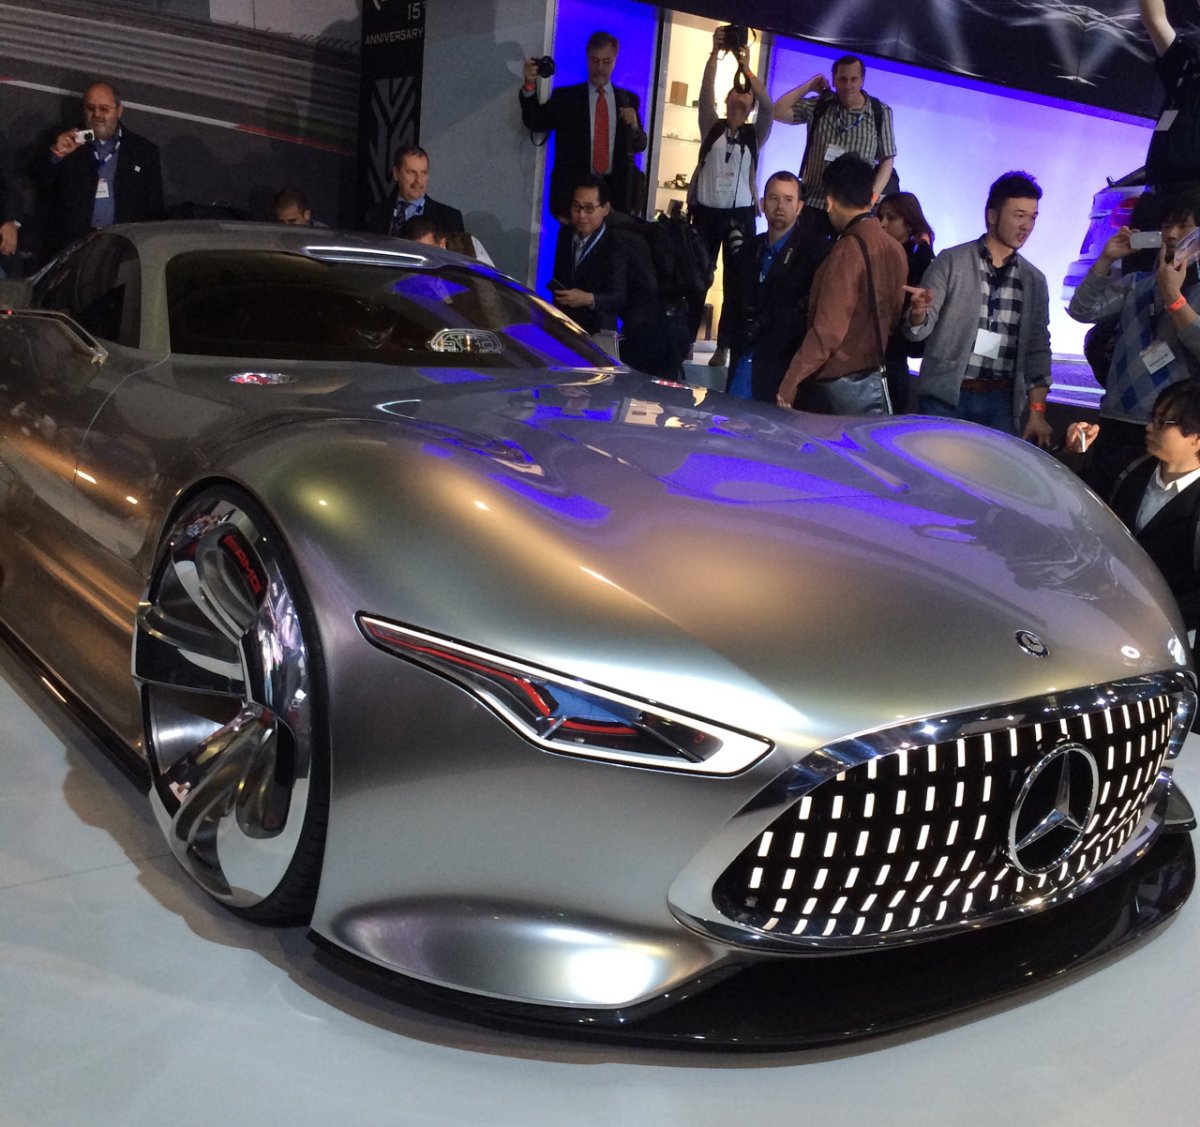 Mercedes Benz AMG Vision Gran Turismo Concept